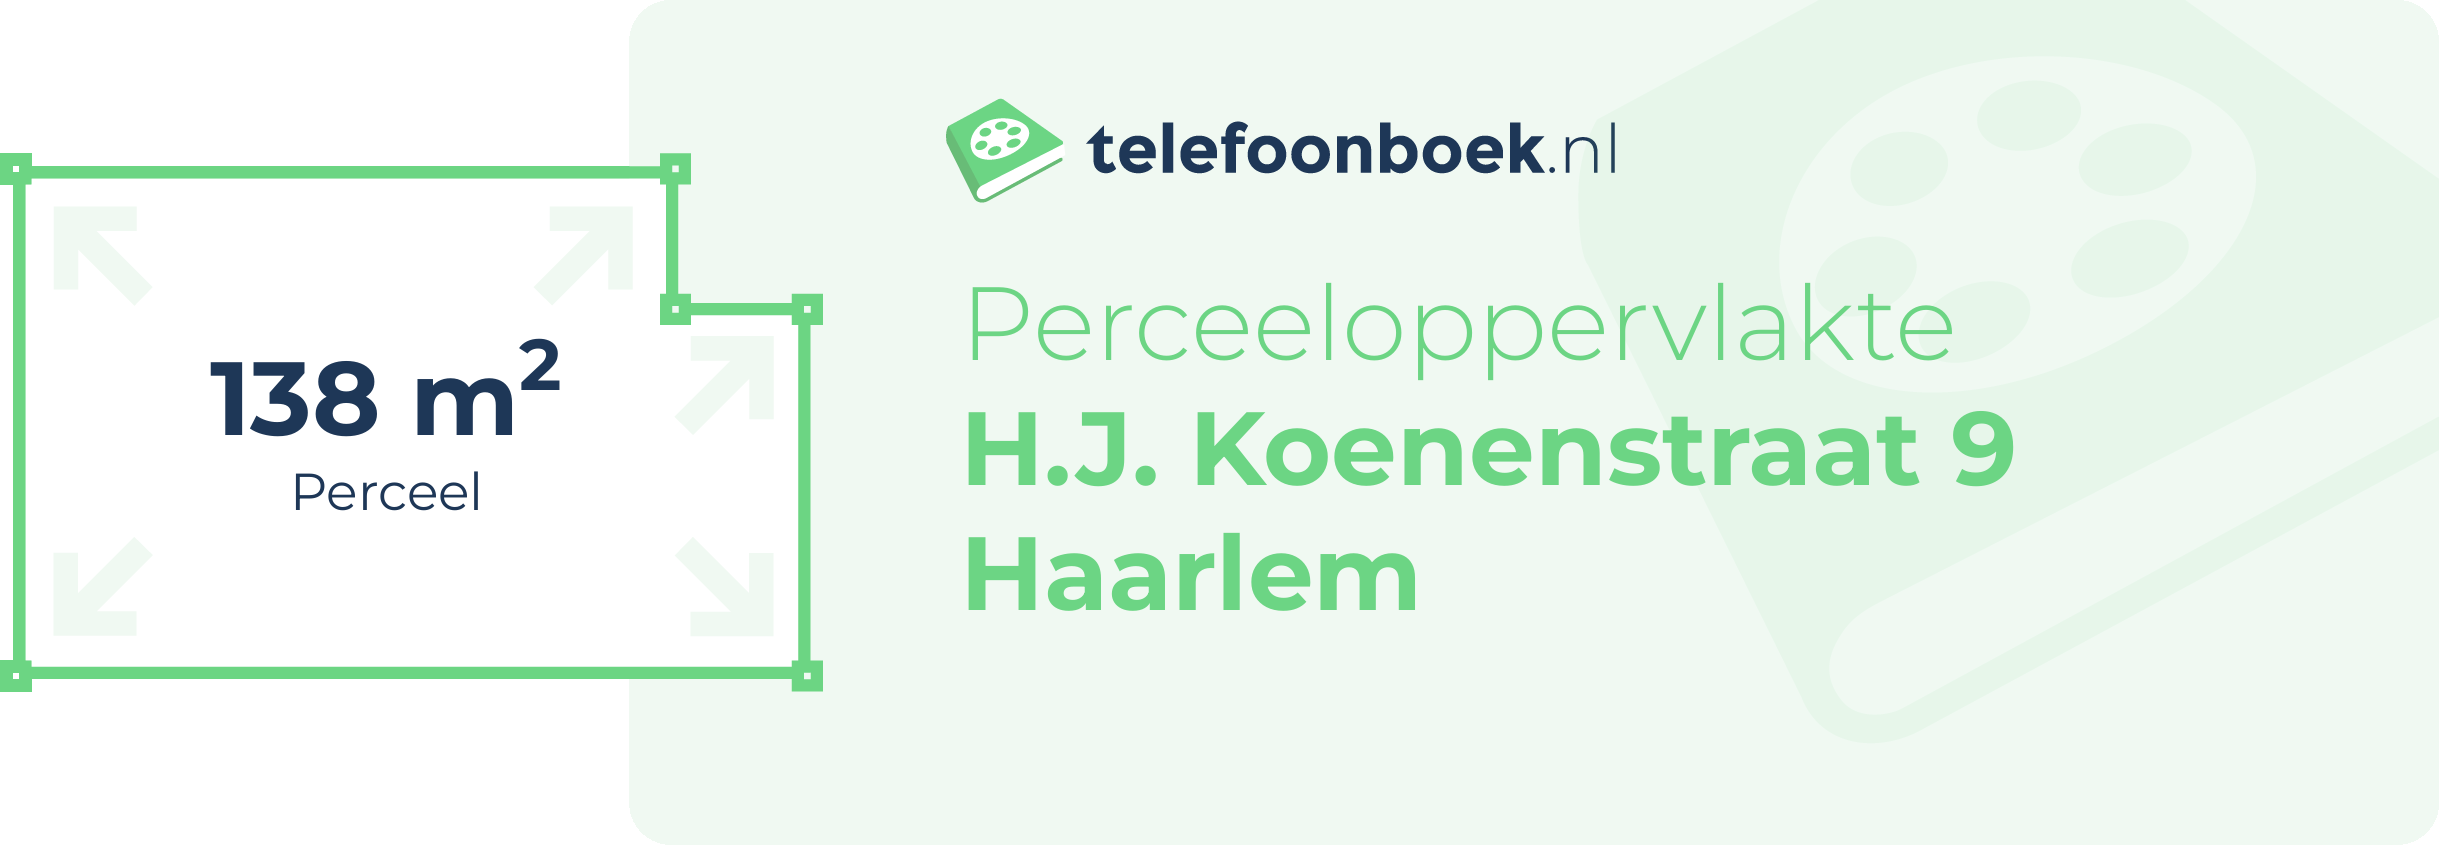 Perceeloppervlakte H.J. Koenenstraat 9 Haarlem